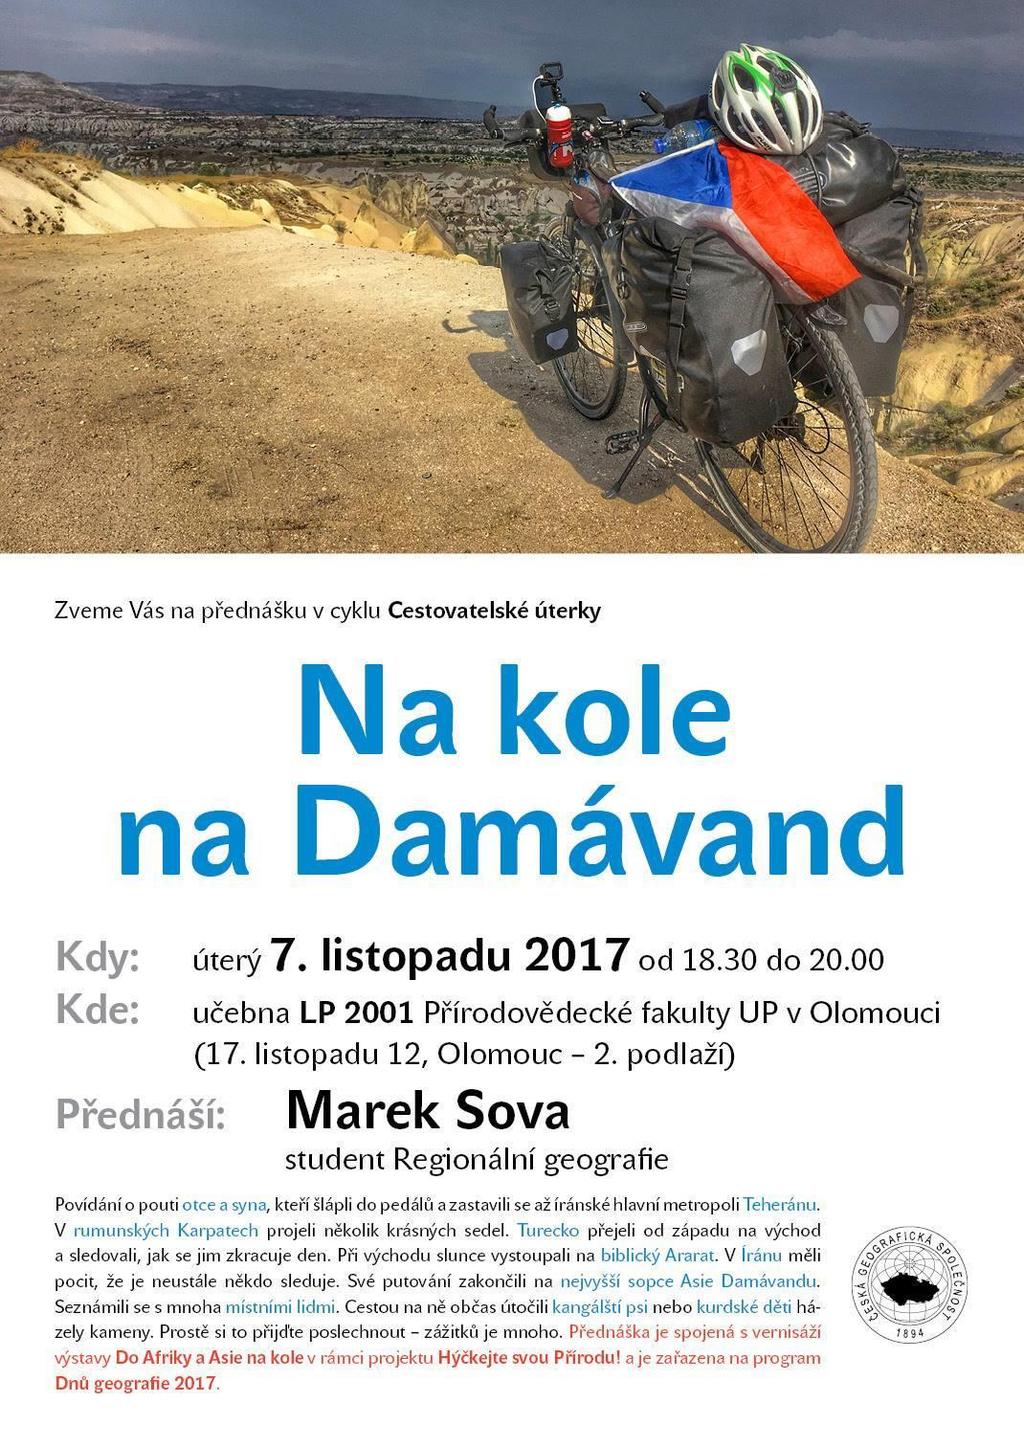 Příloha 3: Plakát Na kole na Damávand